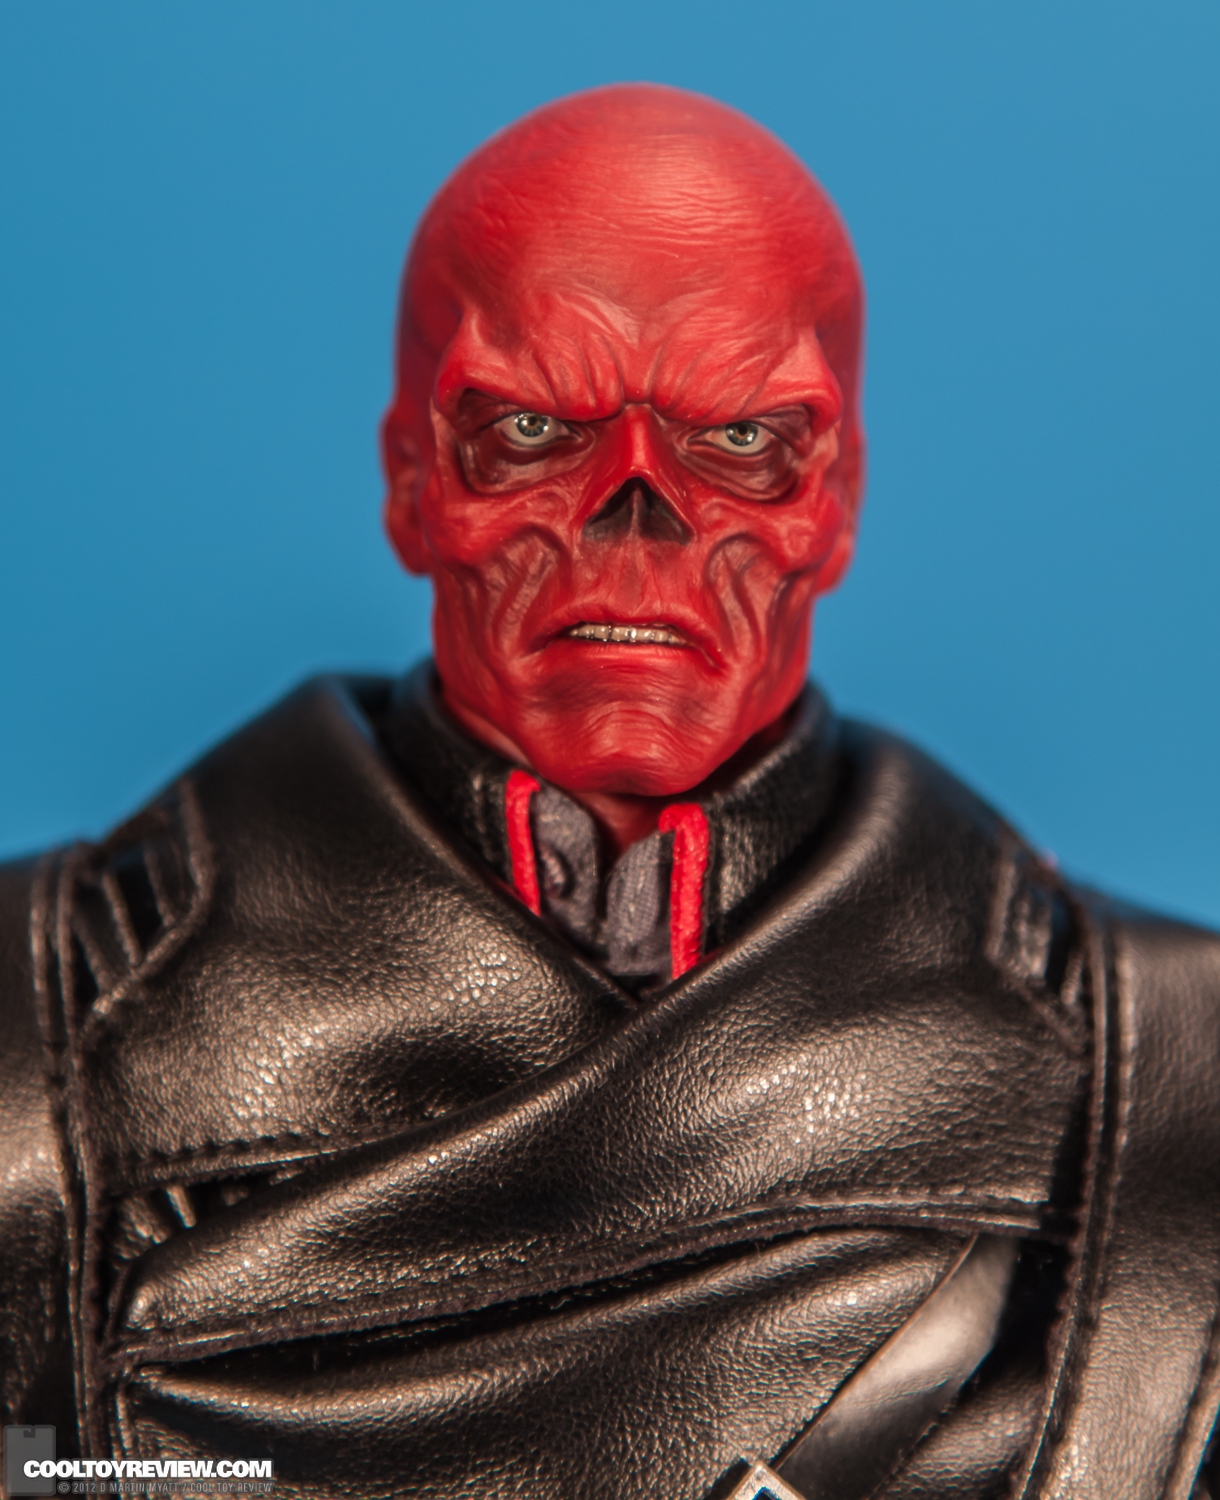 Red_Skull_Captain_America_First_Avenger_Hot_Toys-13.jpg